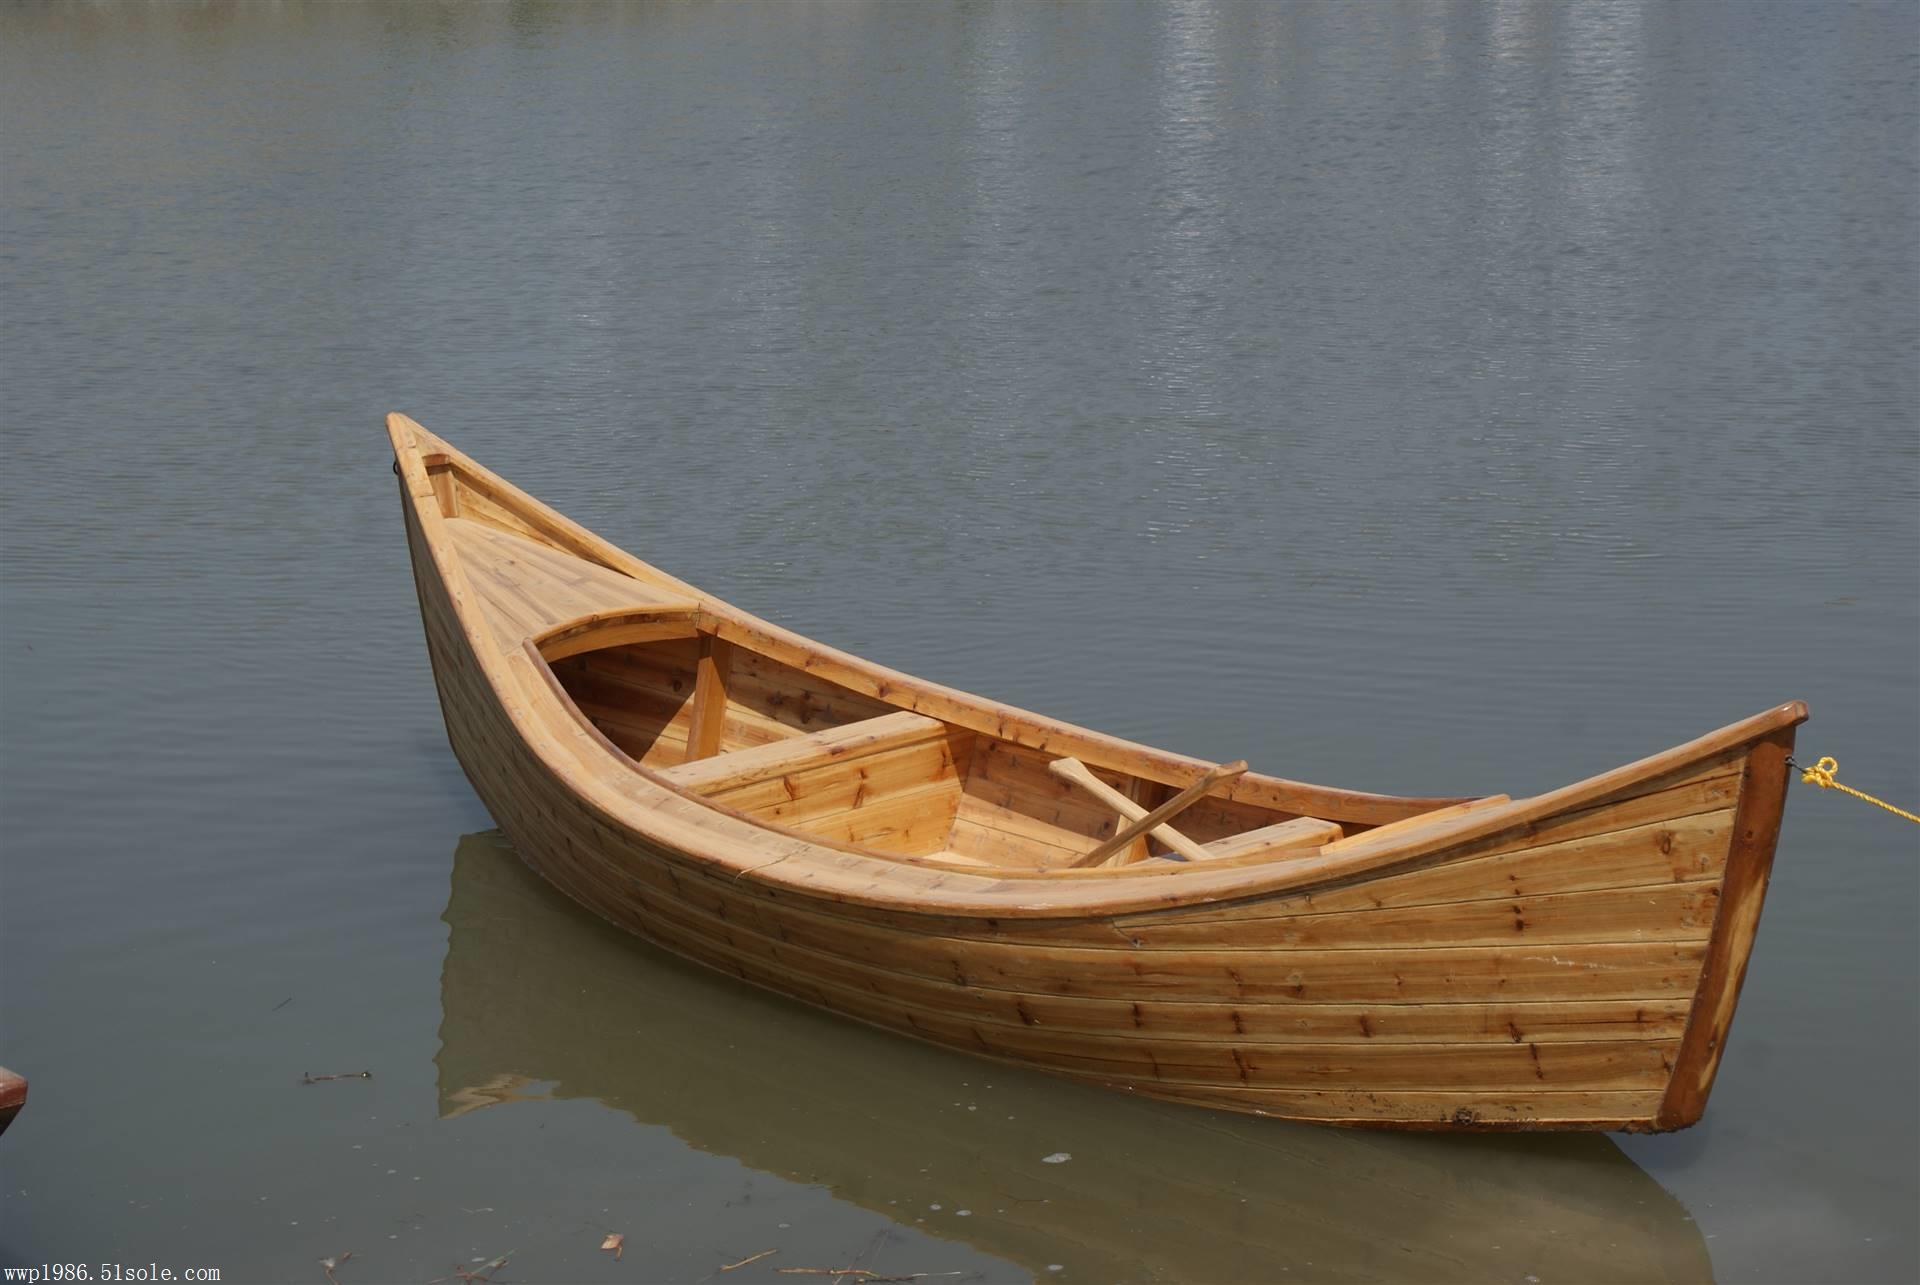 打渔船 乌篷船 摄影道具船 农用小木船